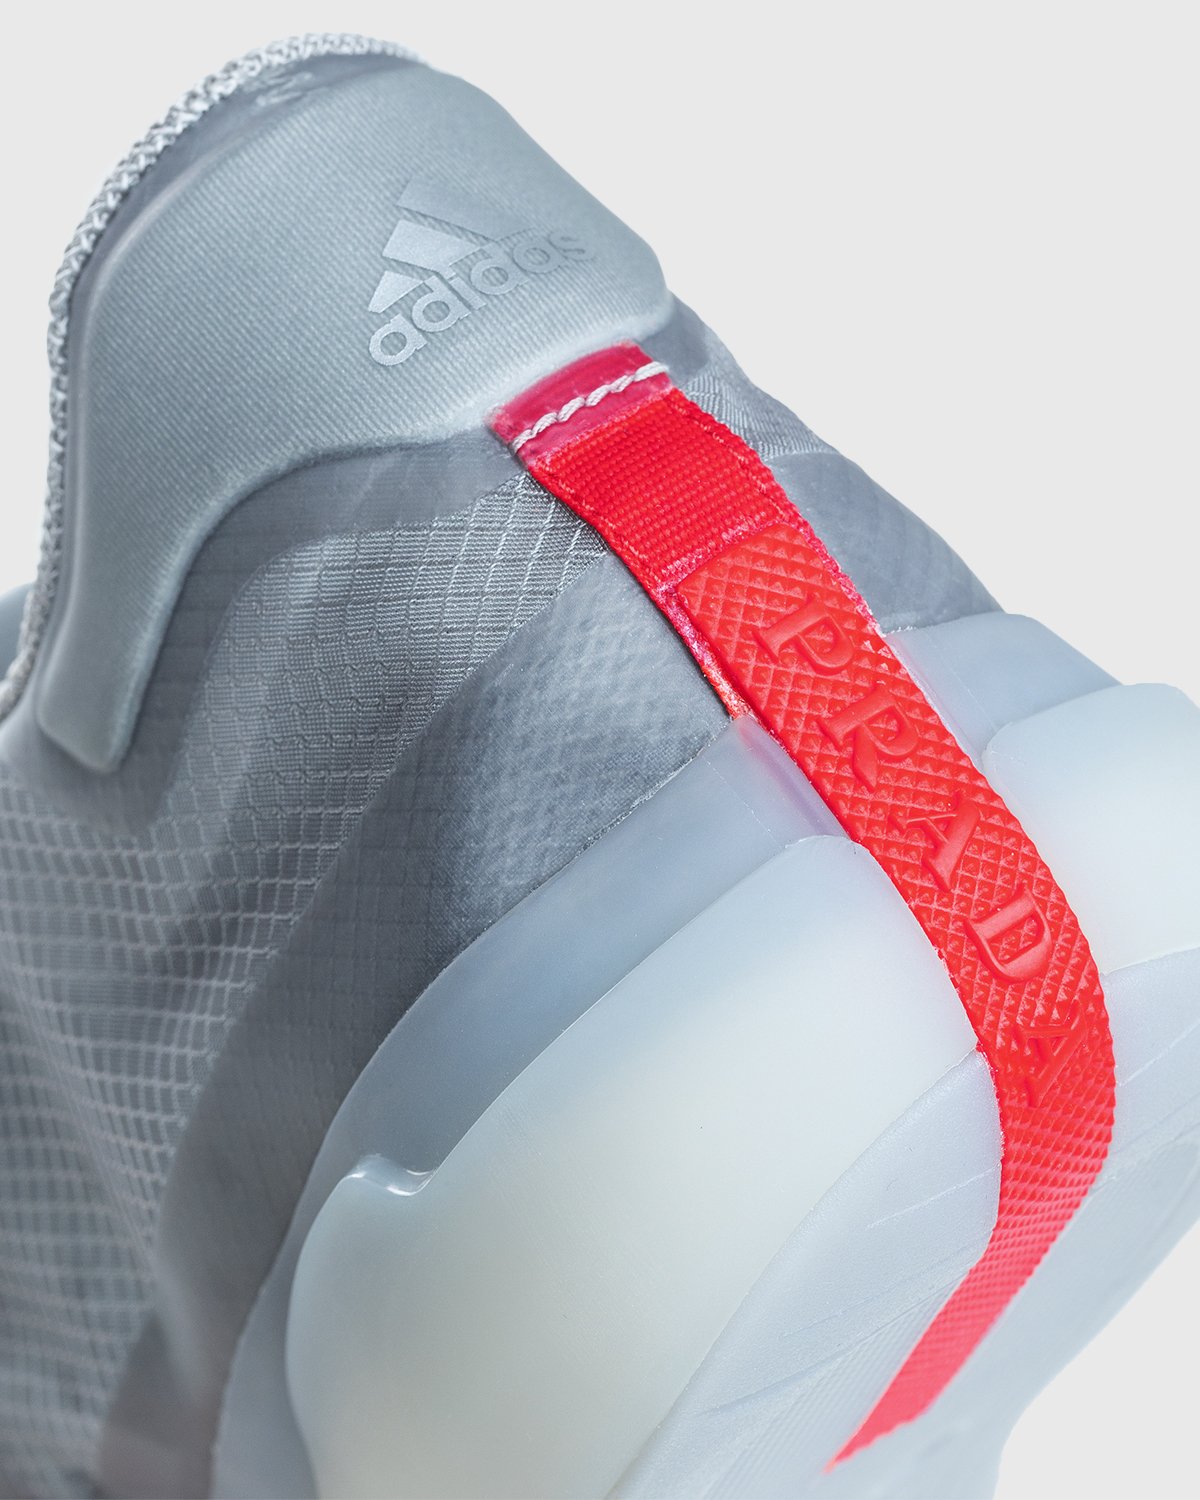 Adidas x Prada - A+P Luna Rossa 21 Performance - Footwear - Grey - Image 8